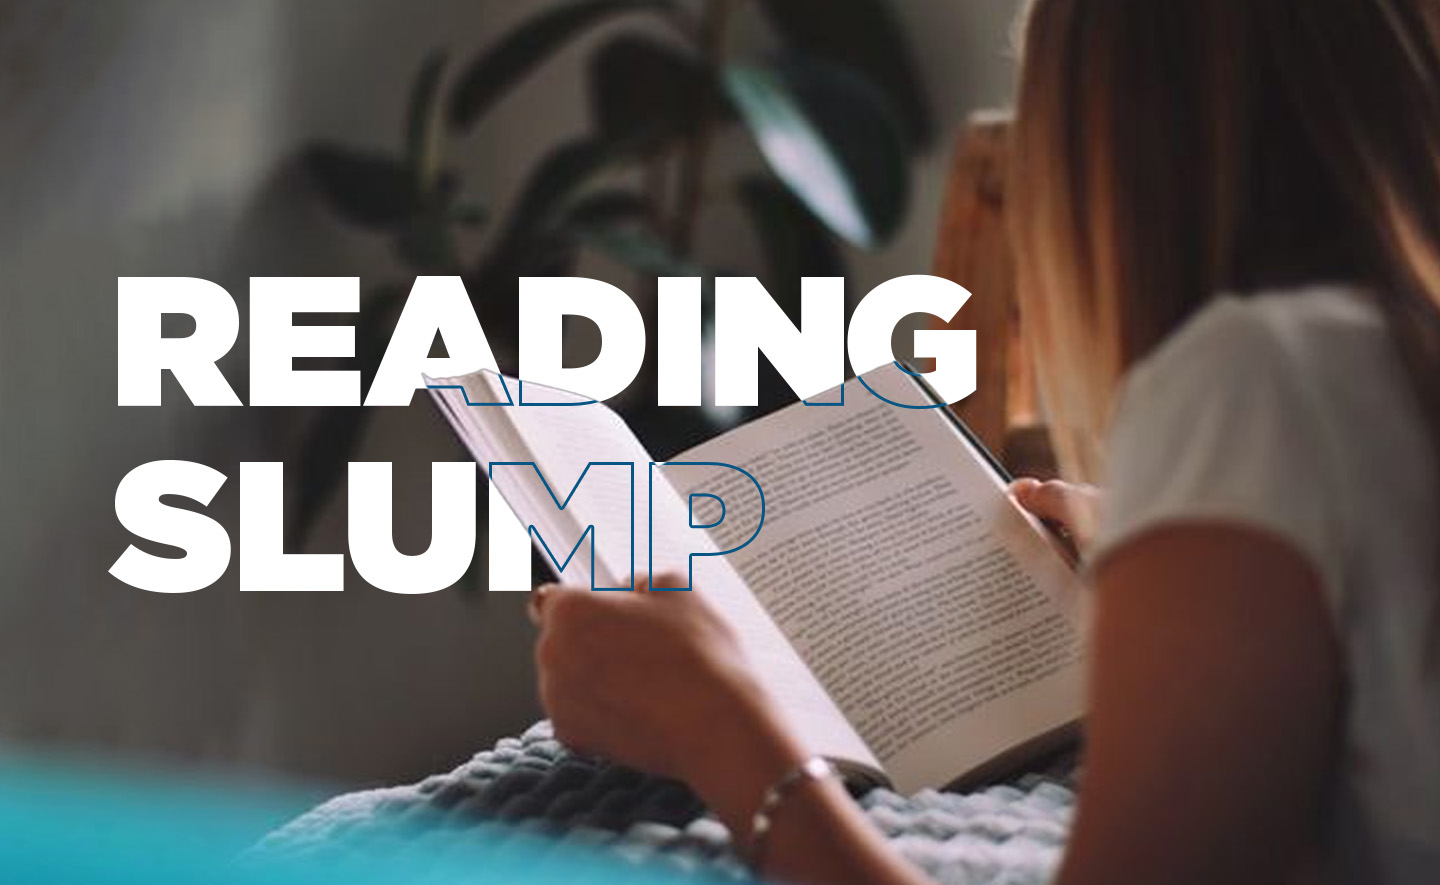 Reading Slump: Chứng 'chán đọc' và những giải pháp để tìm lại sự hứng thú với sách